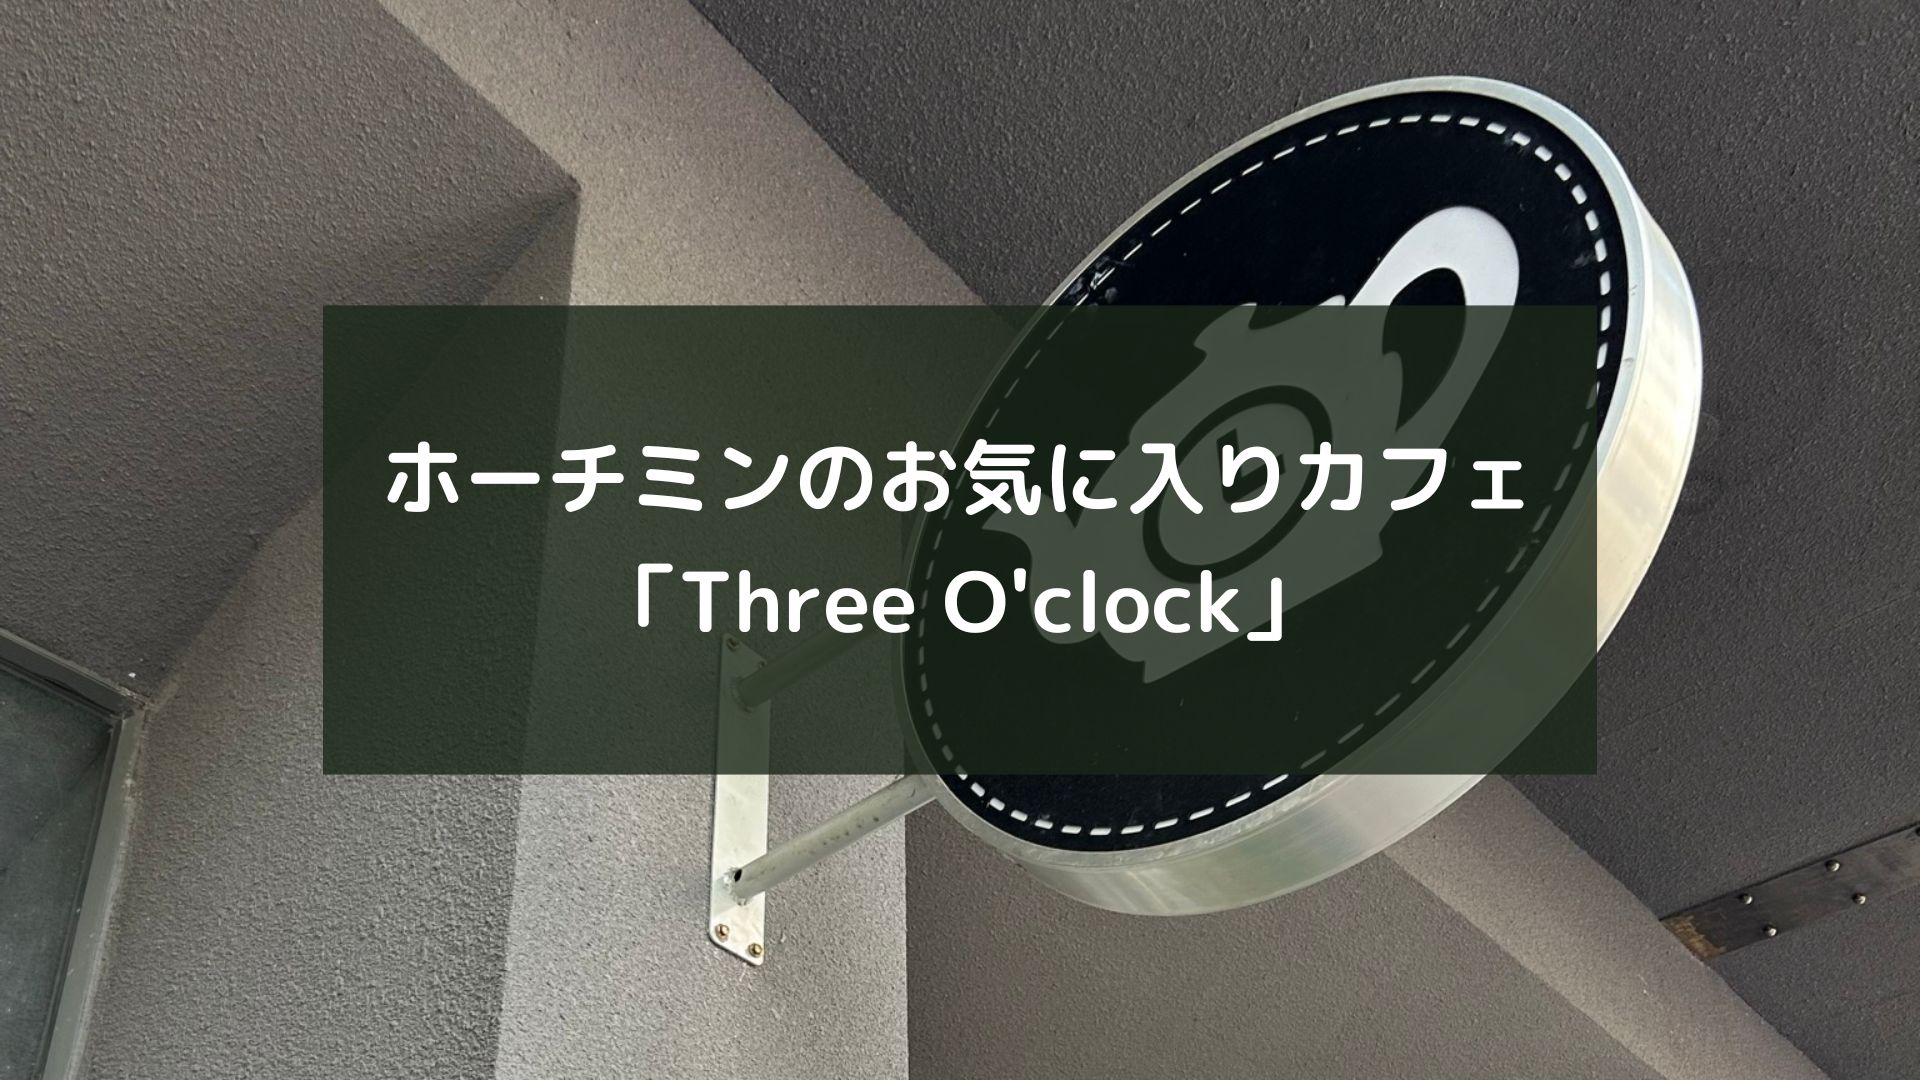 ホーチミンのお気に入りカフェ「Three O'clock」